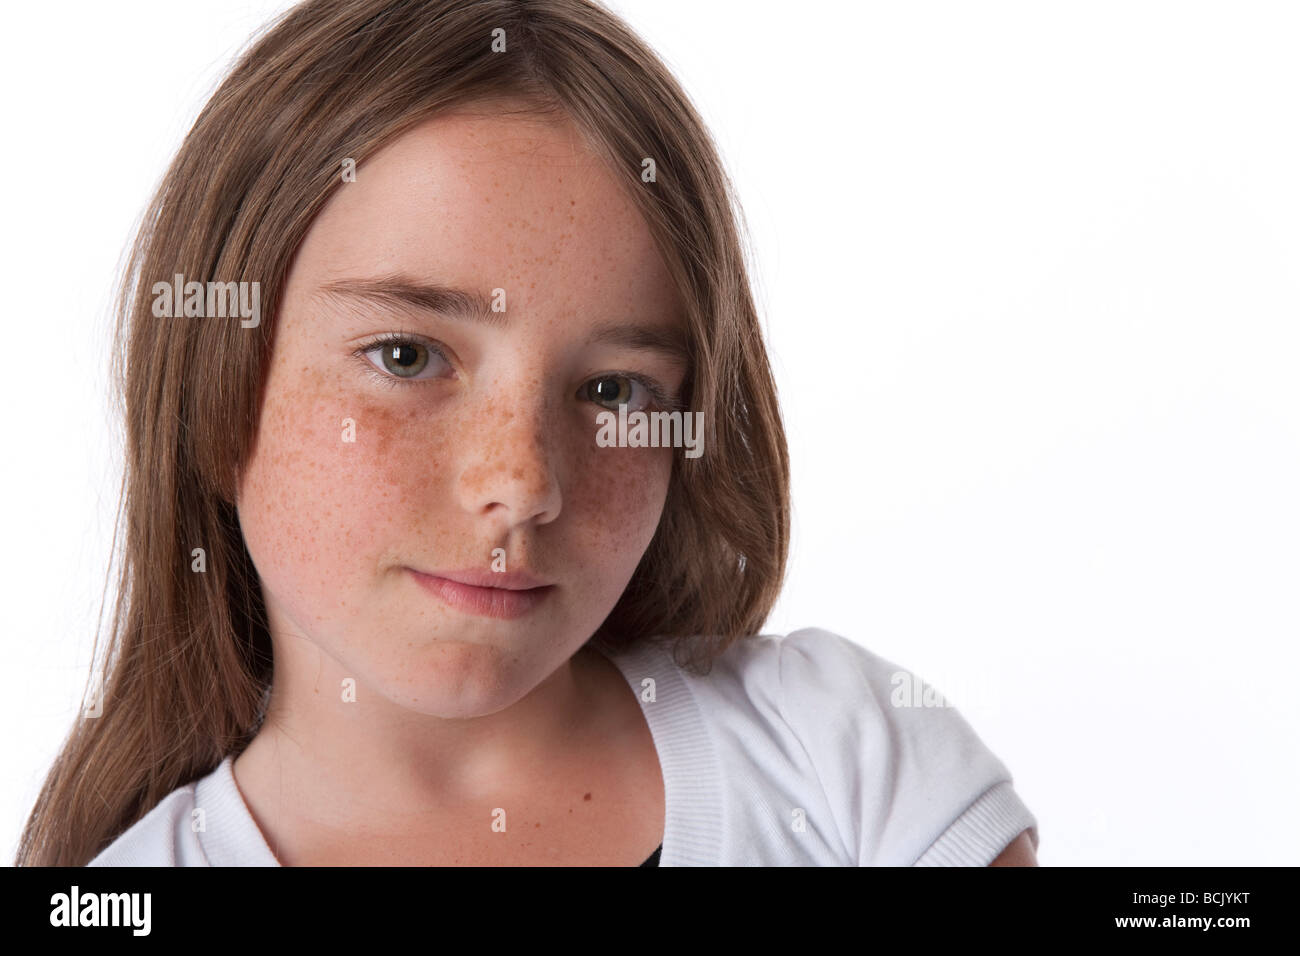 Retrato de una niña de 10 años fresco Foto de stock